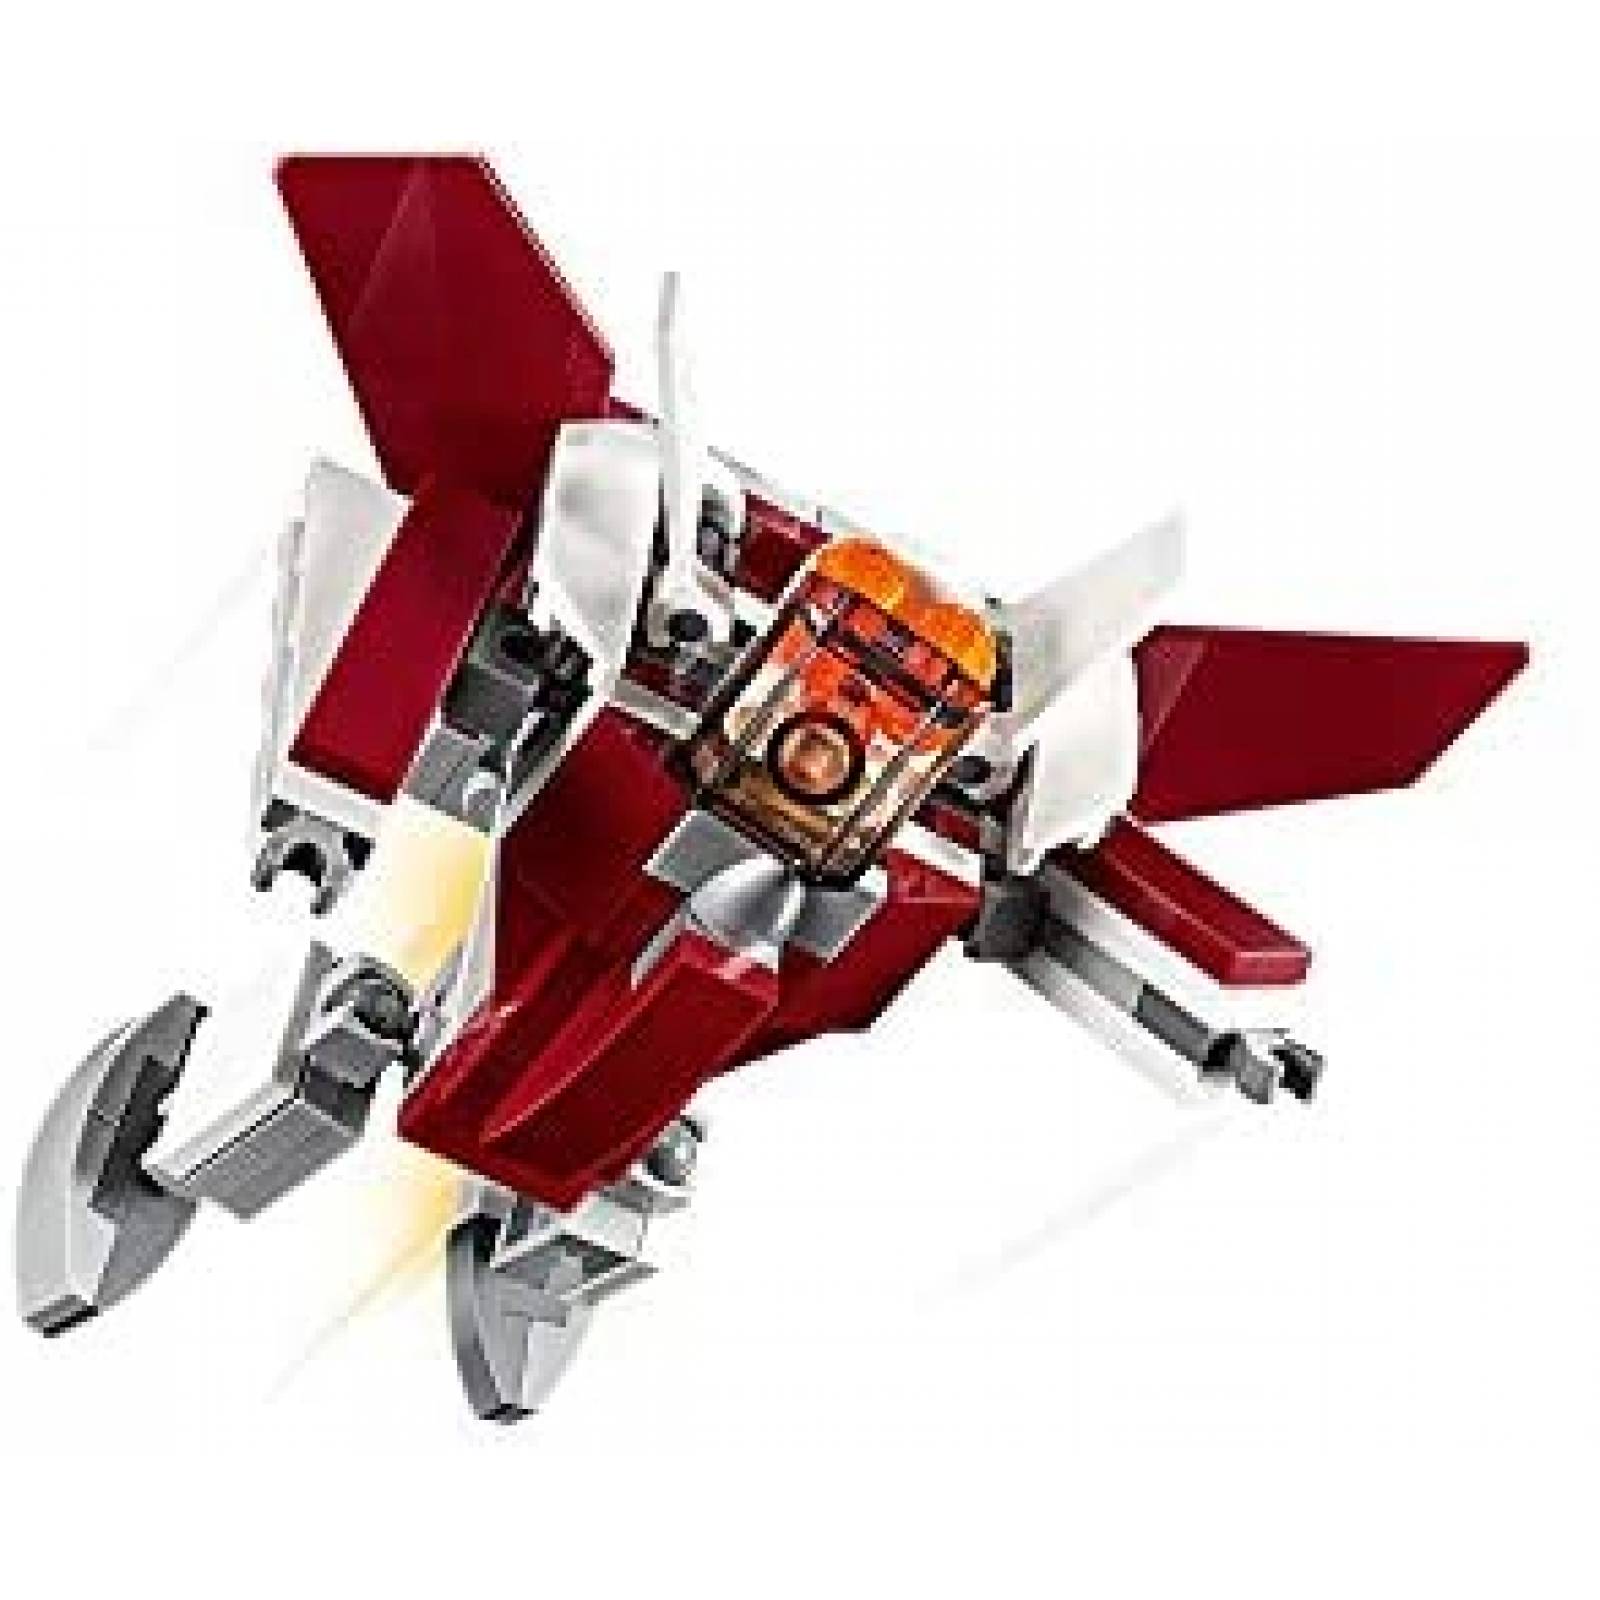 Set de Construcción LEGO Futuristic Flyer 157 Pzs 3 en 1